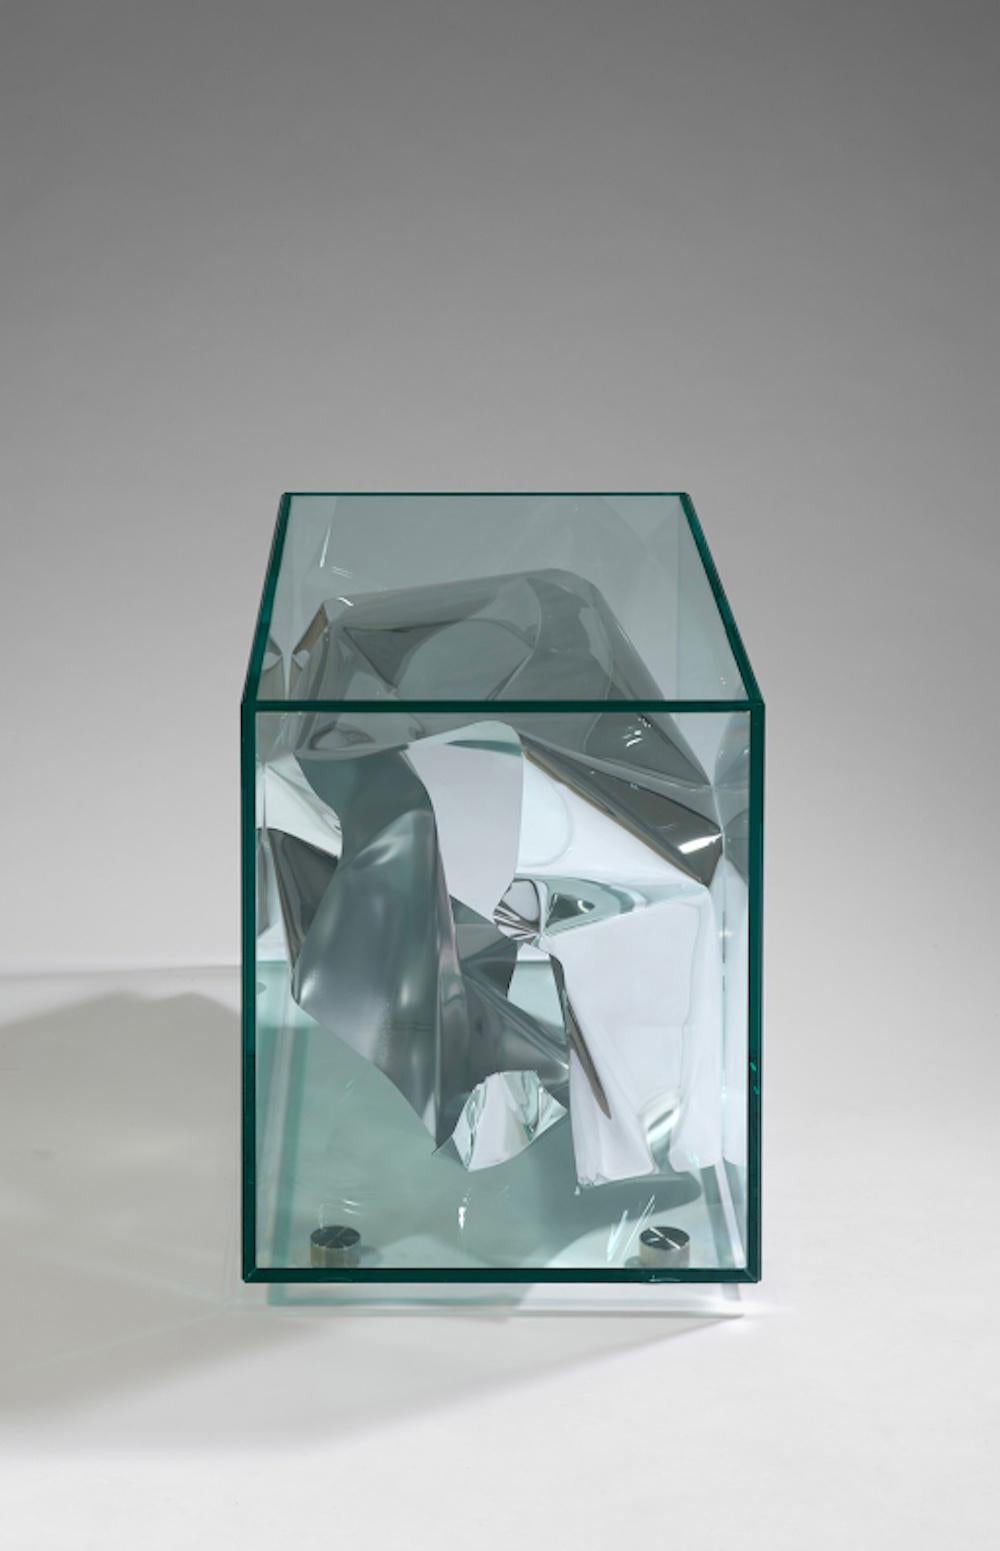 Fredrikson Stallard, UK Designers, Beistelltisch 'Crush', 2012, Limitierte Auflage von 20 + 2P + 2AP. Wasserpoliertes Aluminiumblech wird von den Künstlern von Hand geformt und in einem Glaskasten eingeschlossen. Der Tisch spiegelt seine Umgebung